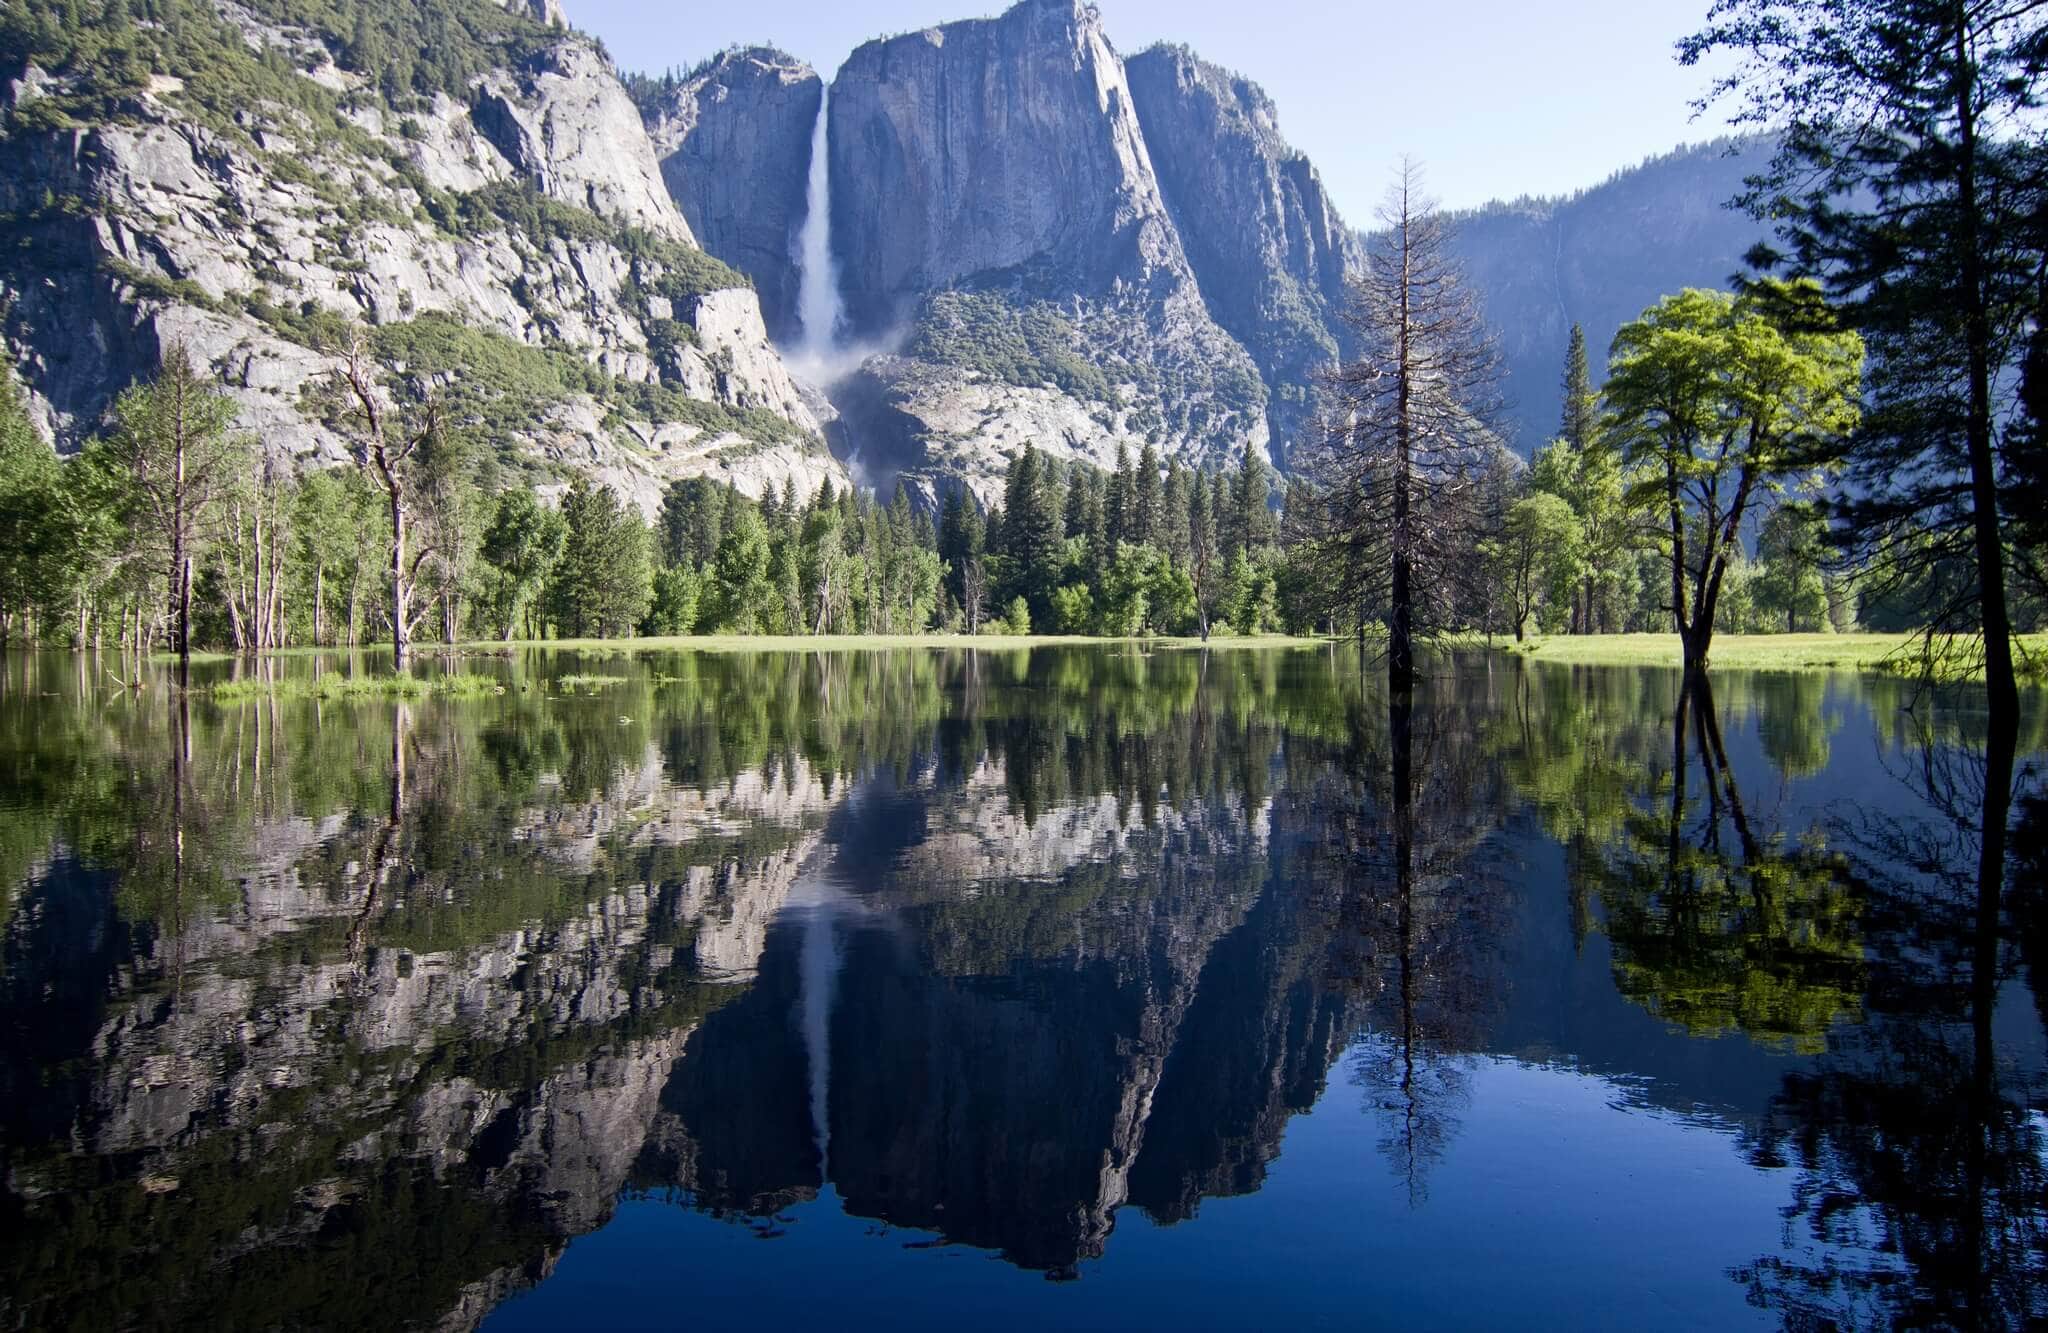 Reflection photography, mirror reflection photography, mirror images photography, Yosemite National Park photos, photos of Yosemite